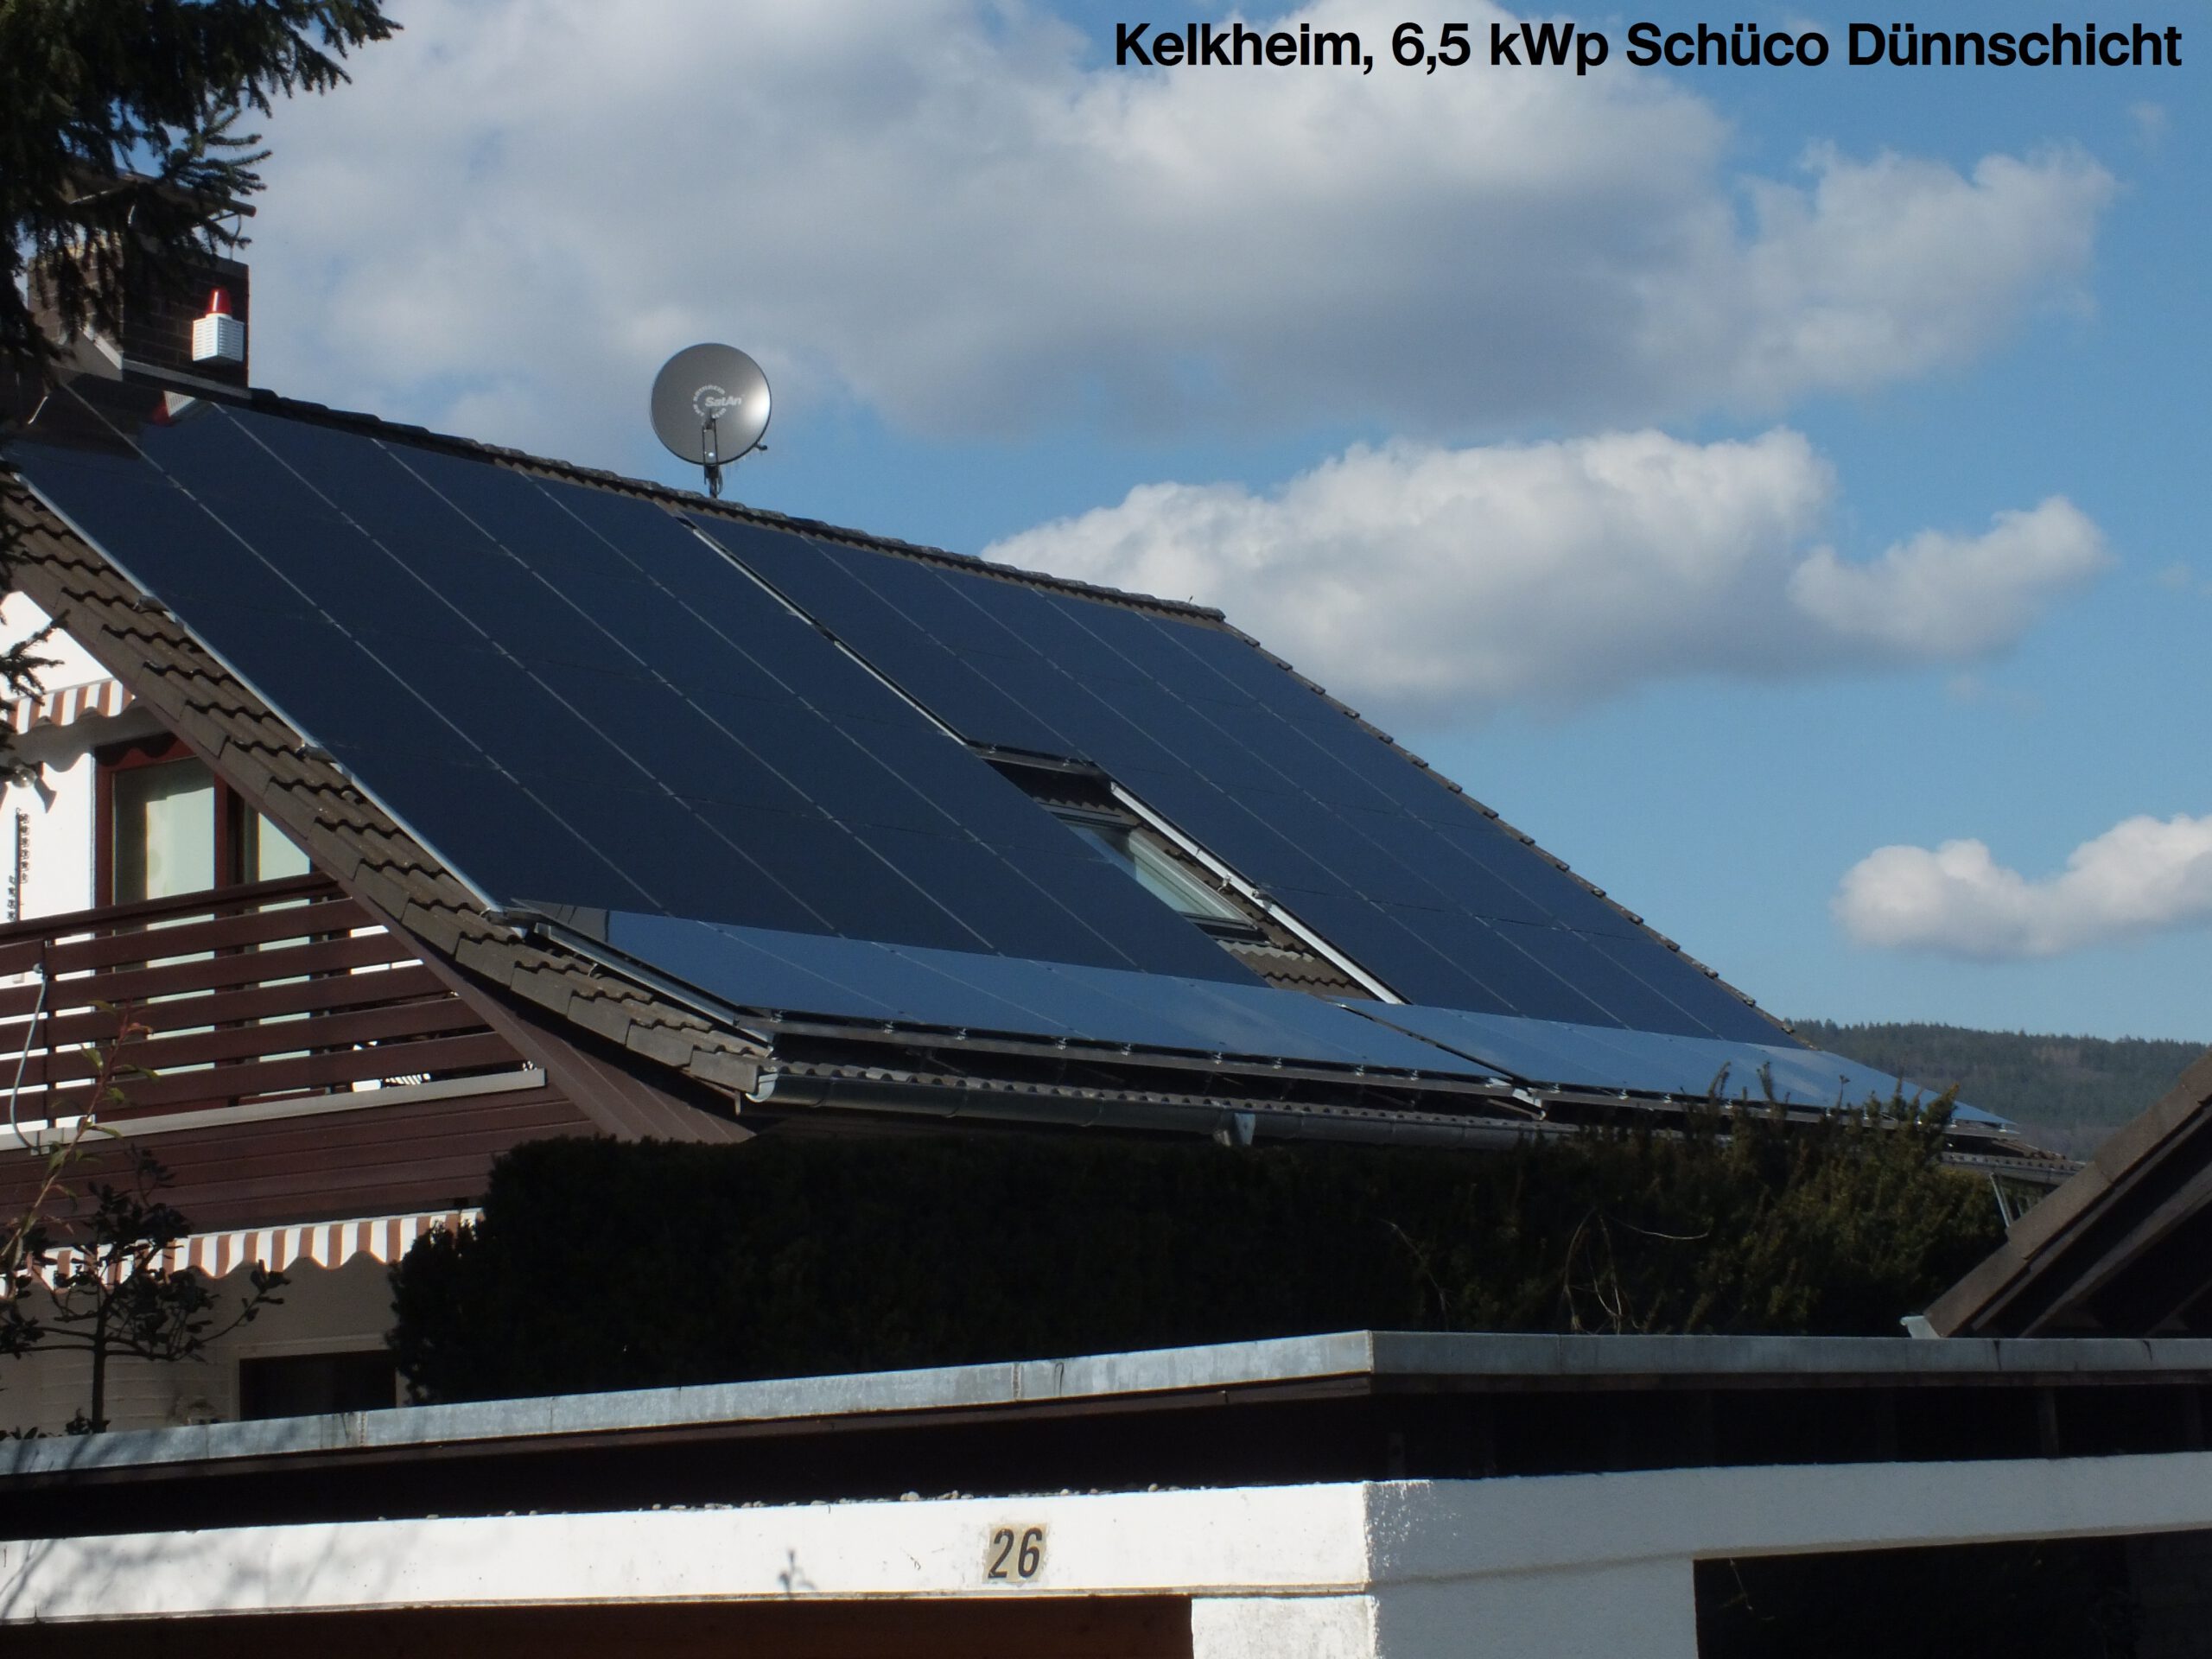 Photovoltaik, DAV-Projekt, Nachhaltige Zukunft, Solarenergie, Hessen, Rheinlandpfalz